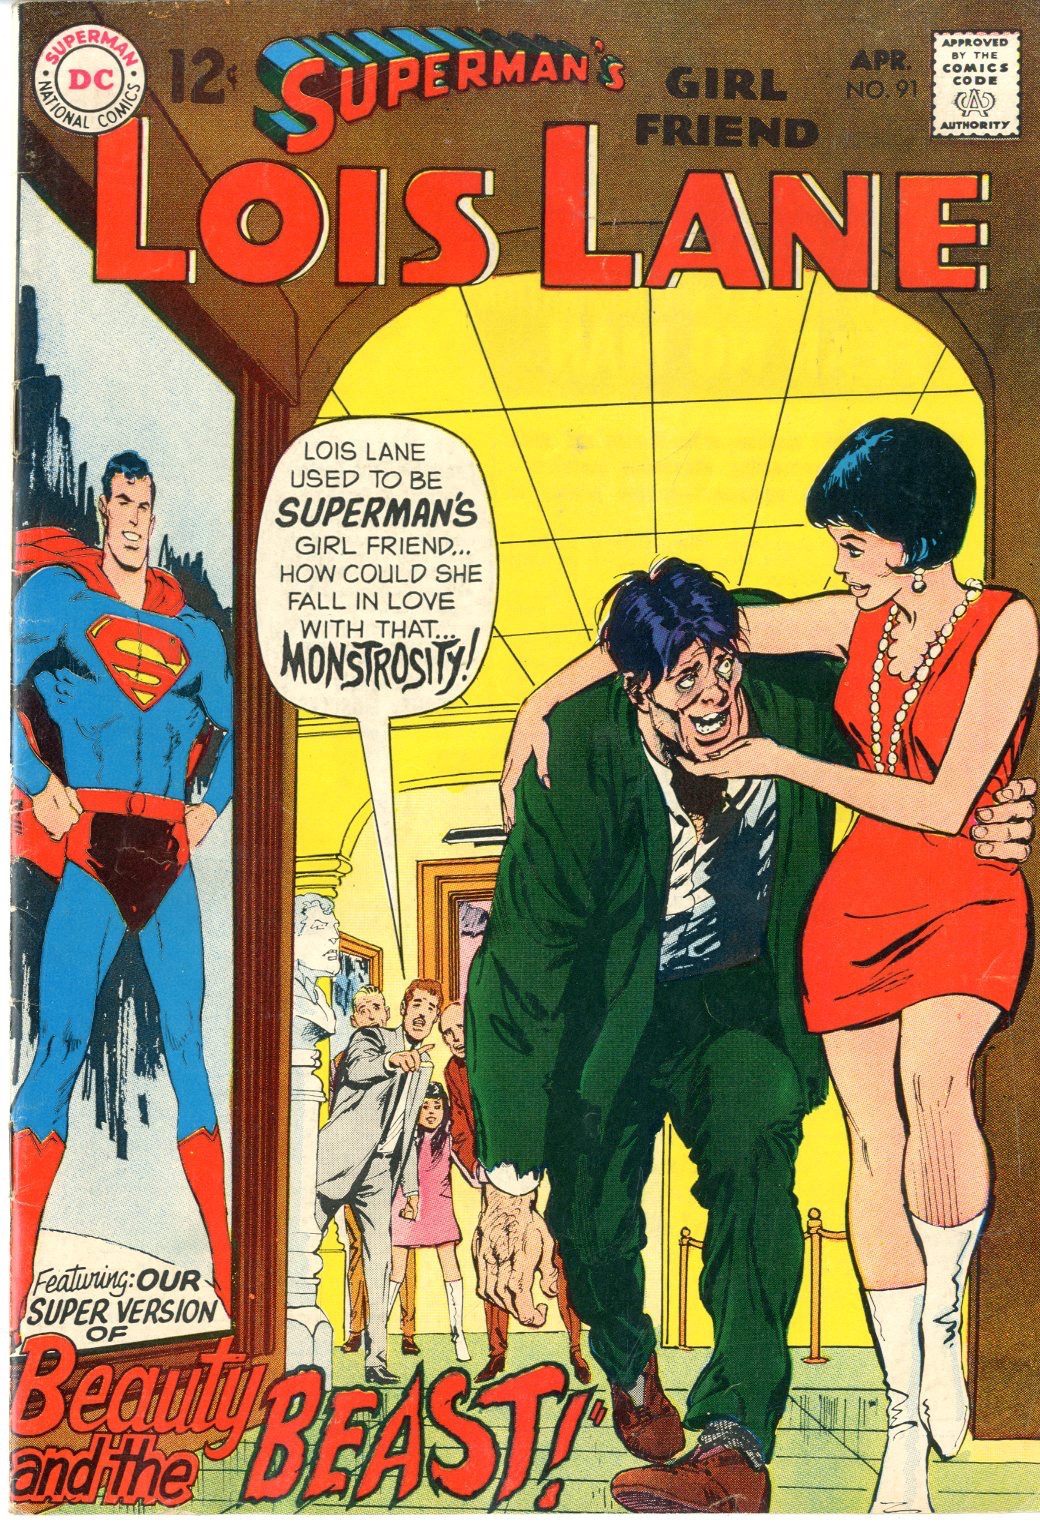 Lois Lane Issue 91 Comics Details Four Color Comics